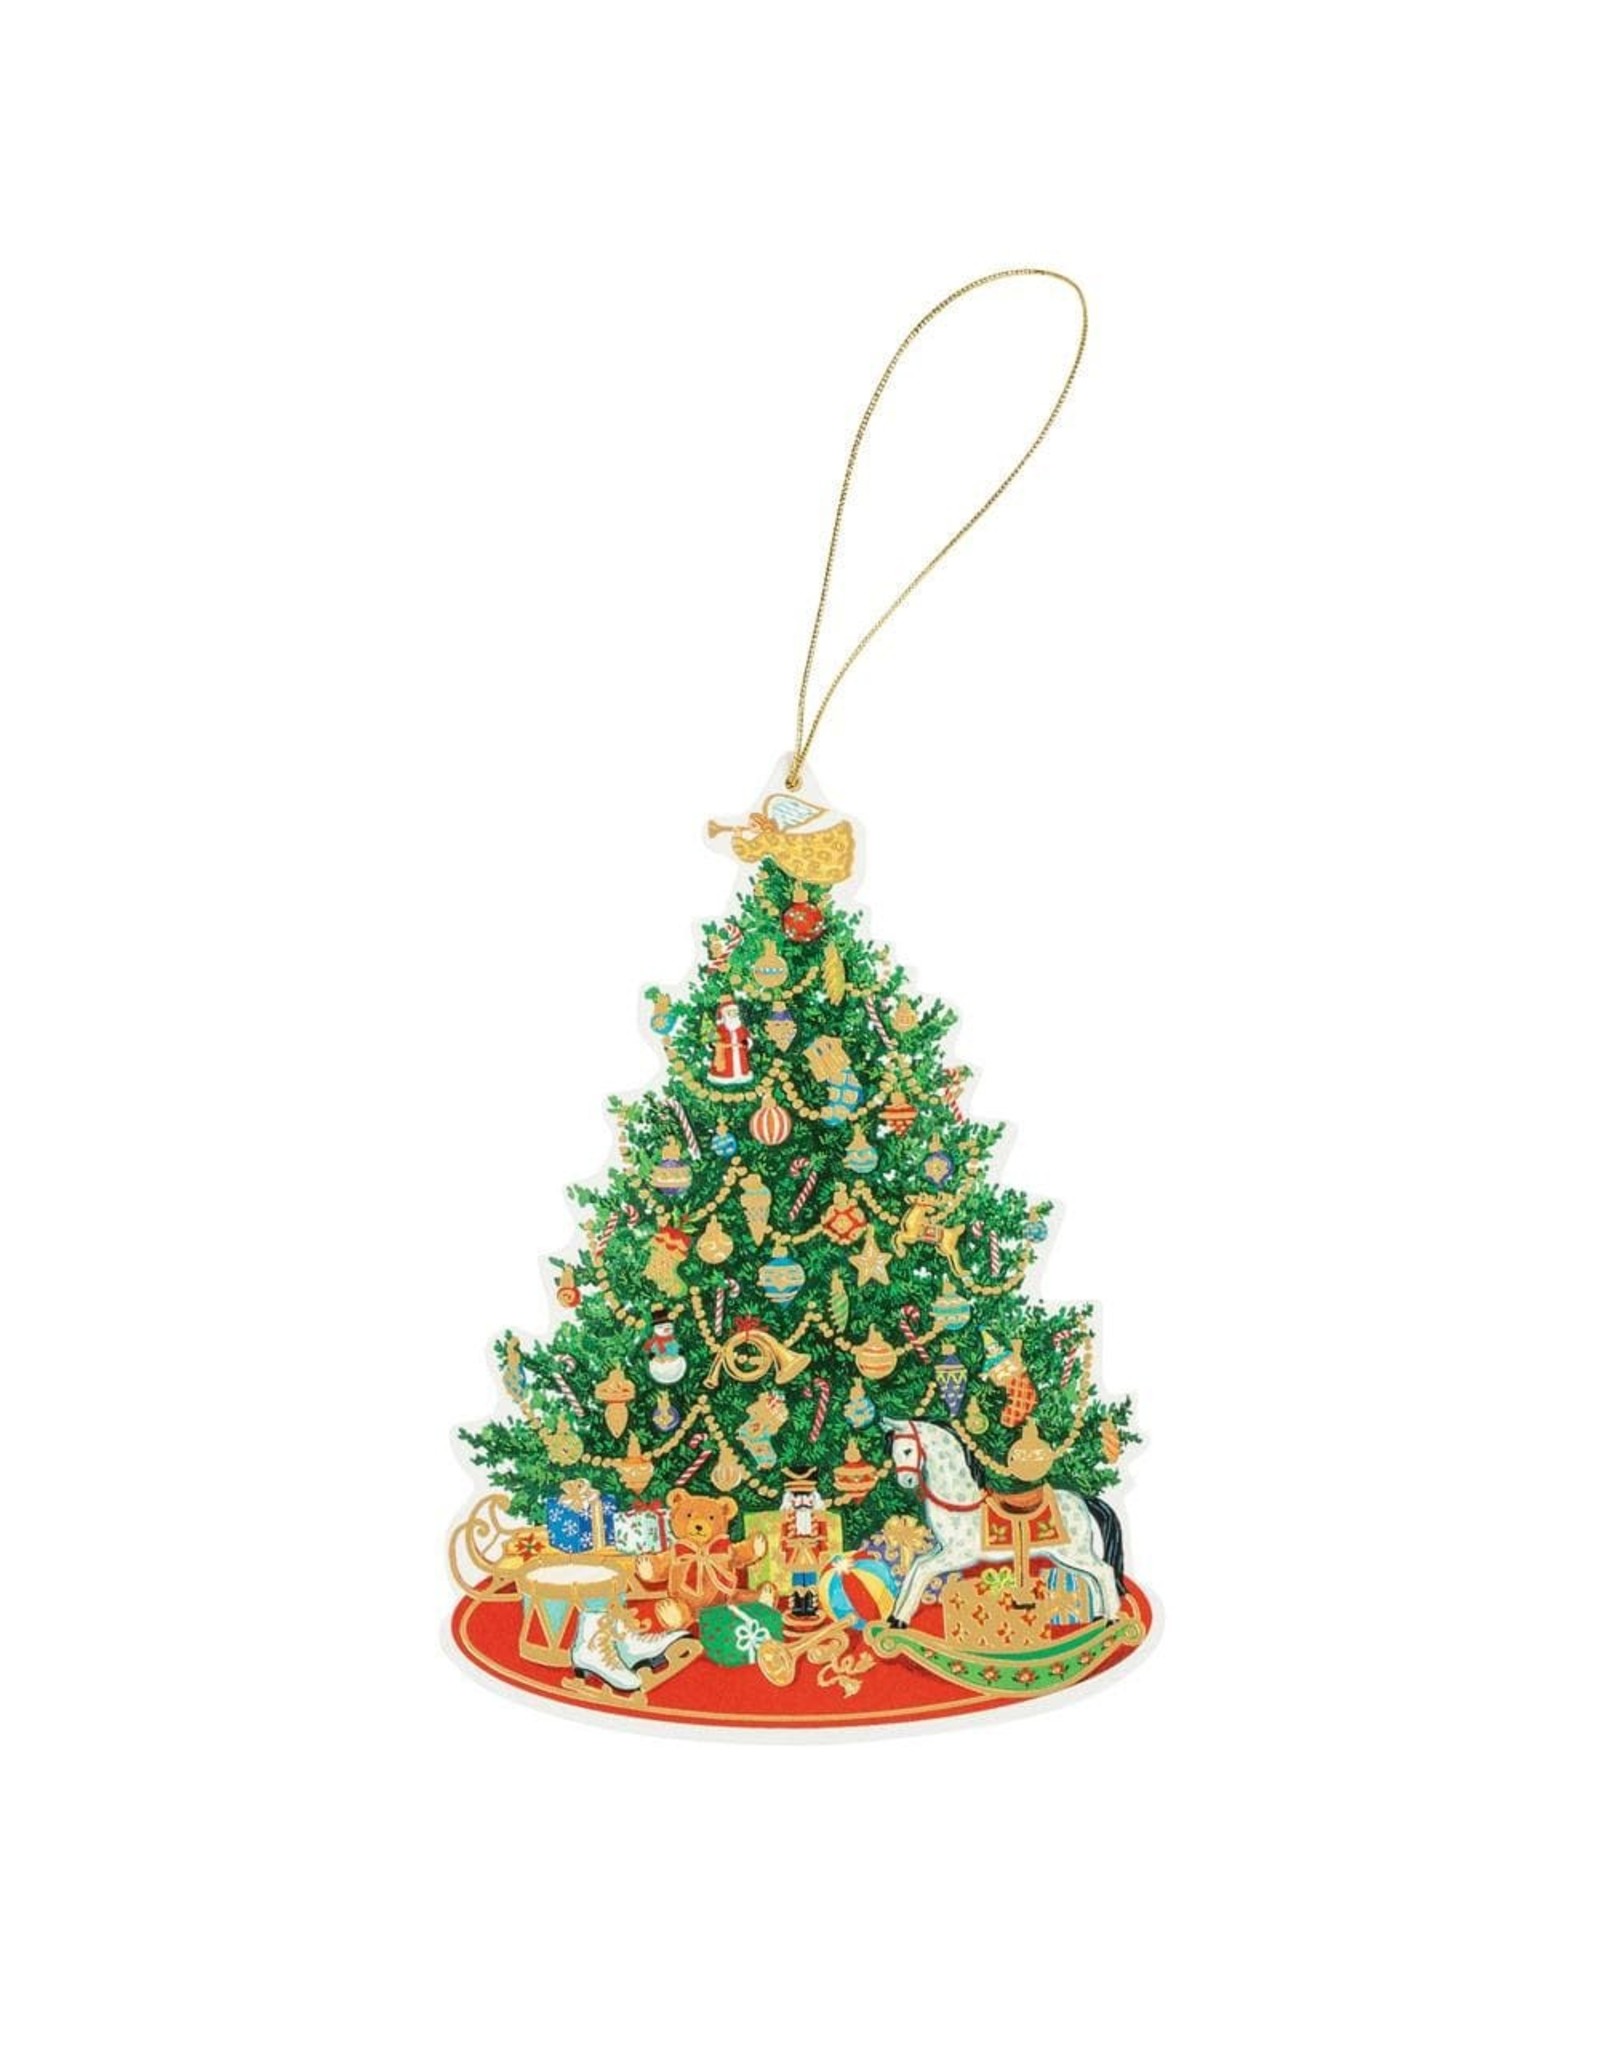 Caspari Ornament Gift Tags 4pk Oh Christmas Tree